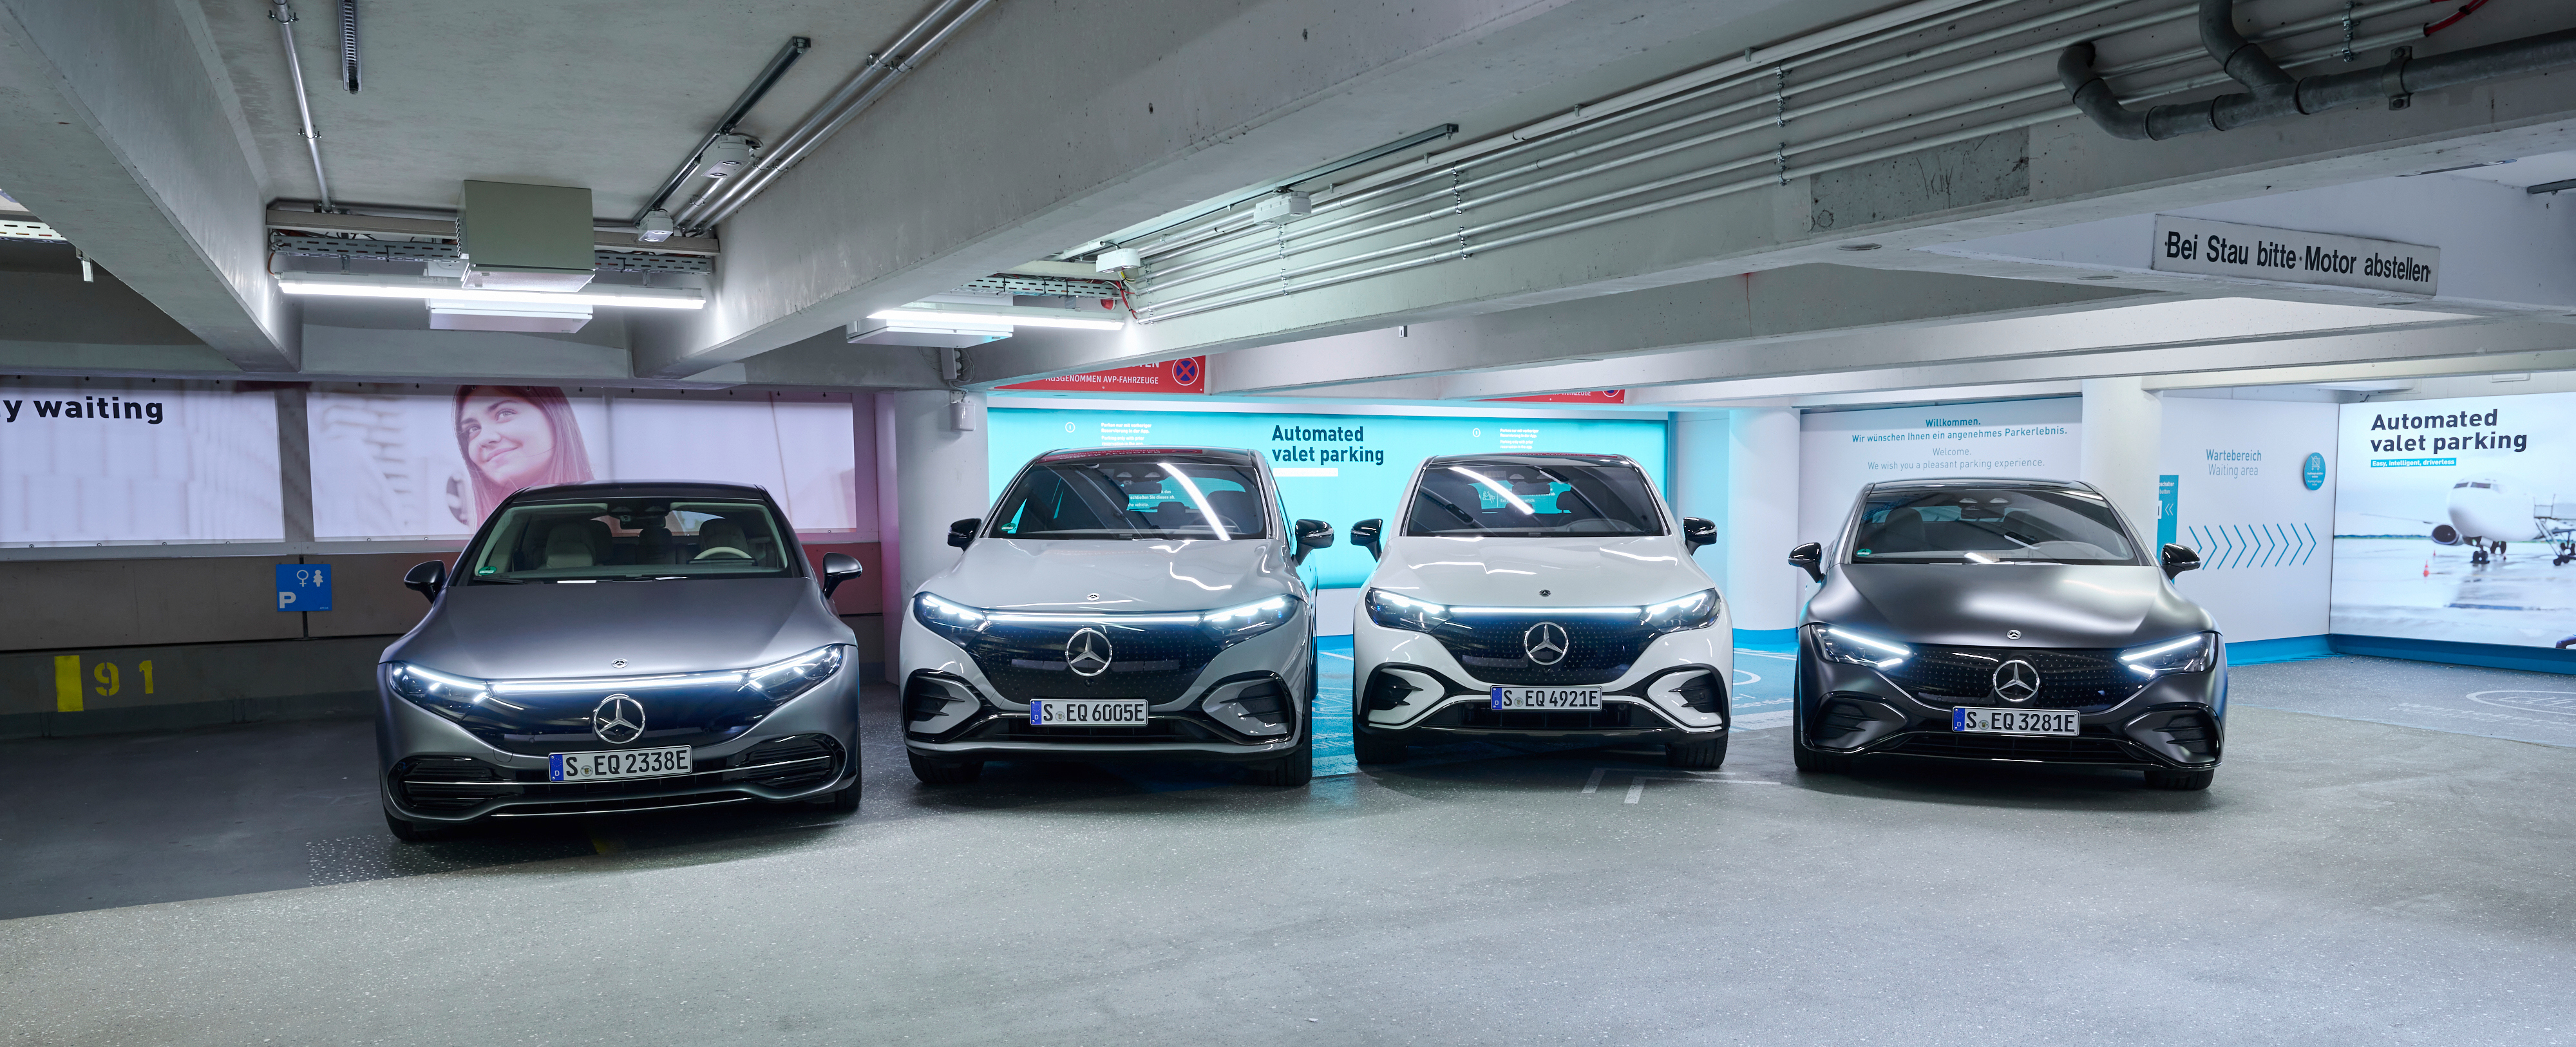 Внедорожники Mercedes EQE и EQS получили автоматизированную парковку без водителя